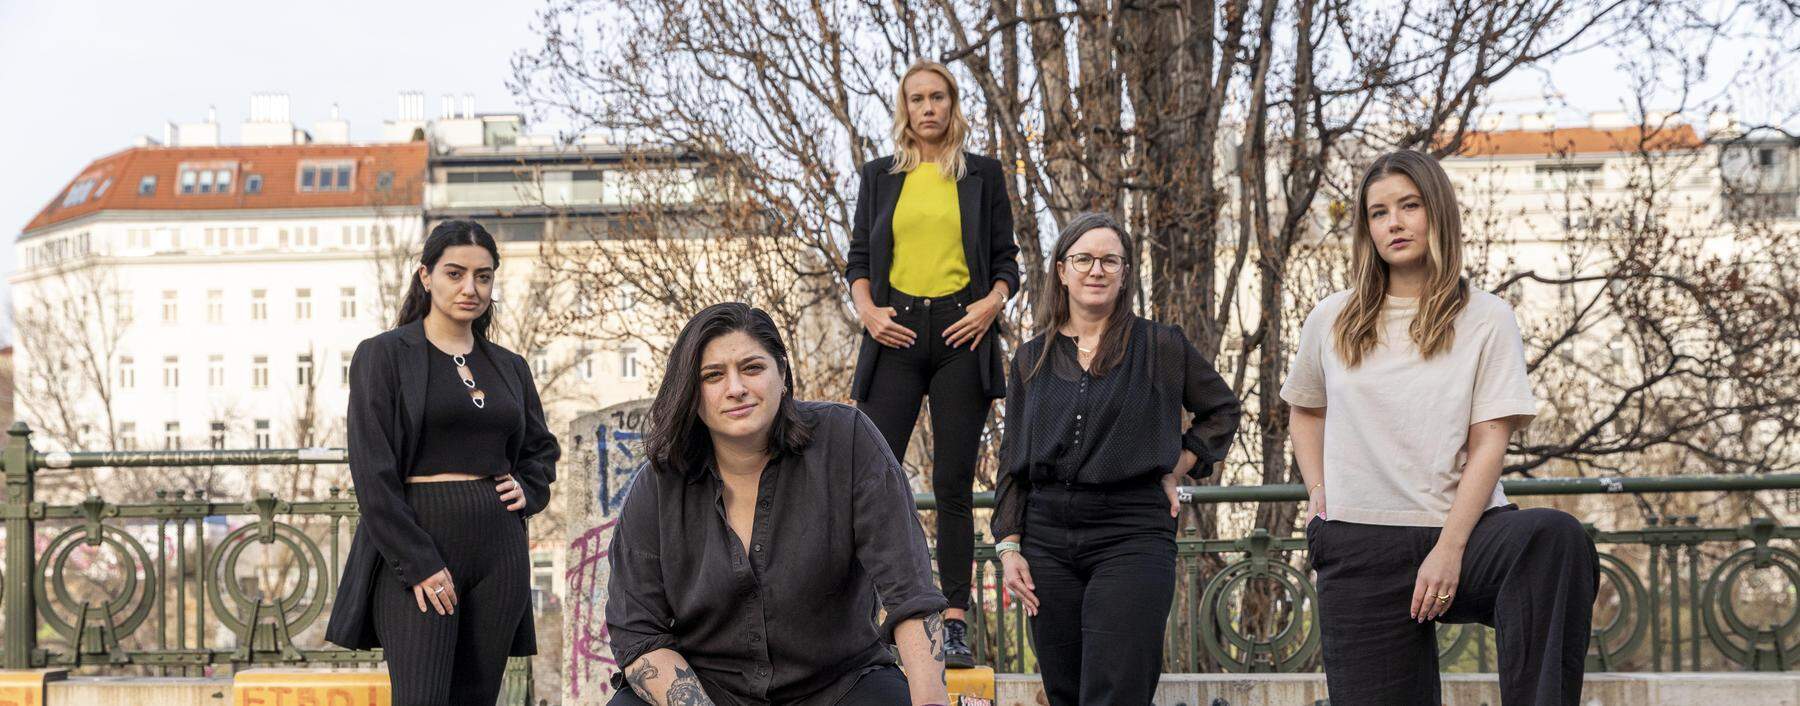 Evin Ersen, Sibel Ada, Katja Grafl, Carina Gastelsberger und Viktoria Stanzl (von links) bilden den Vorstand des Frauennetzwerks Sorority. 